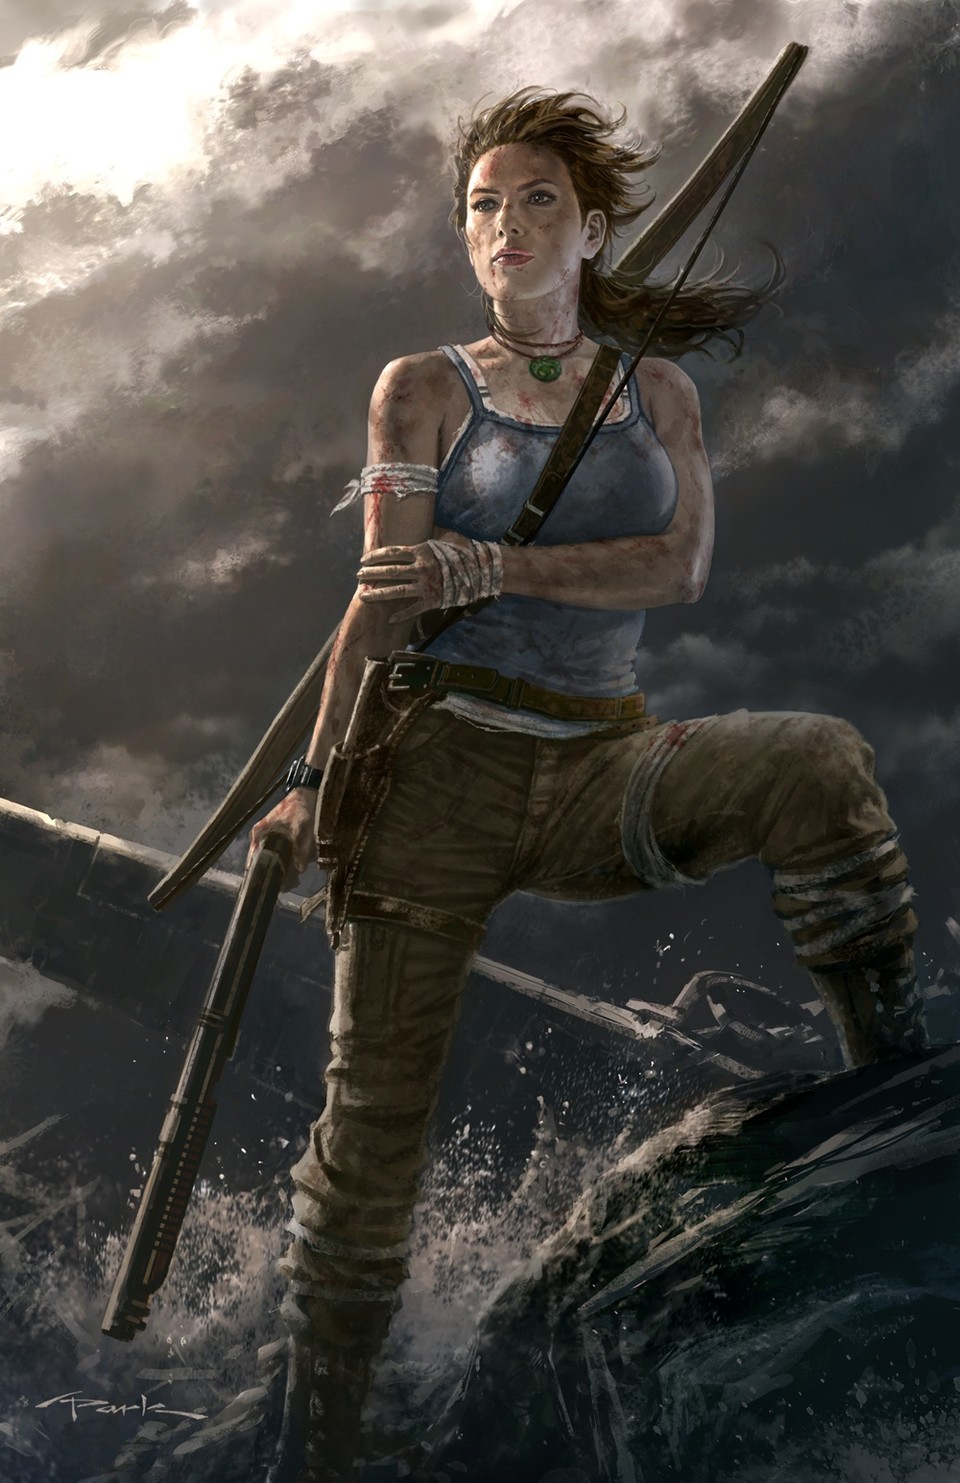 Lara-Croft-Artwork von dem Zeichner Andy Park.